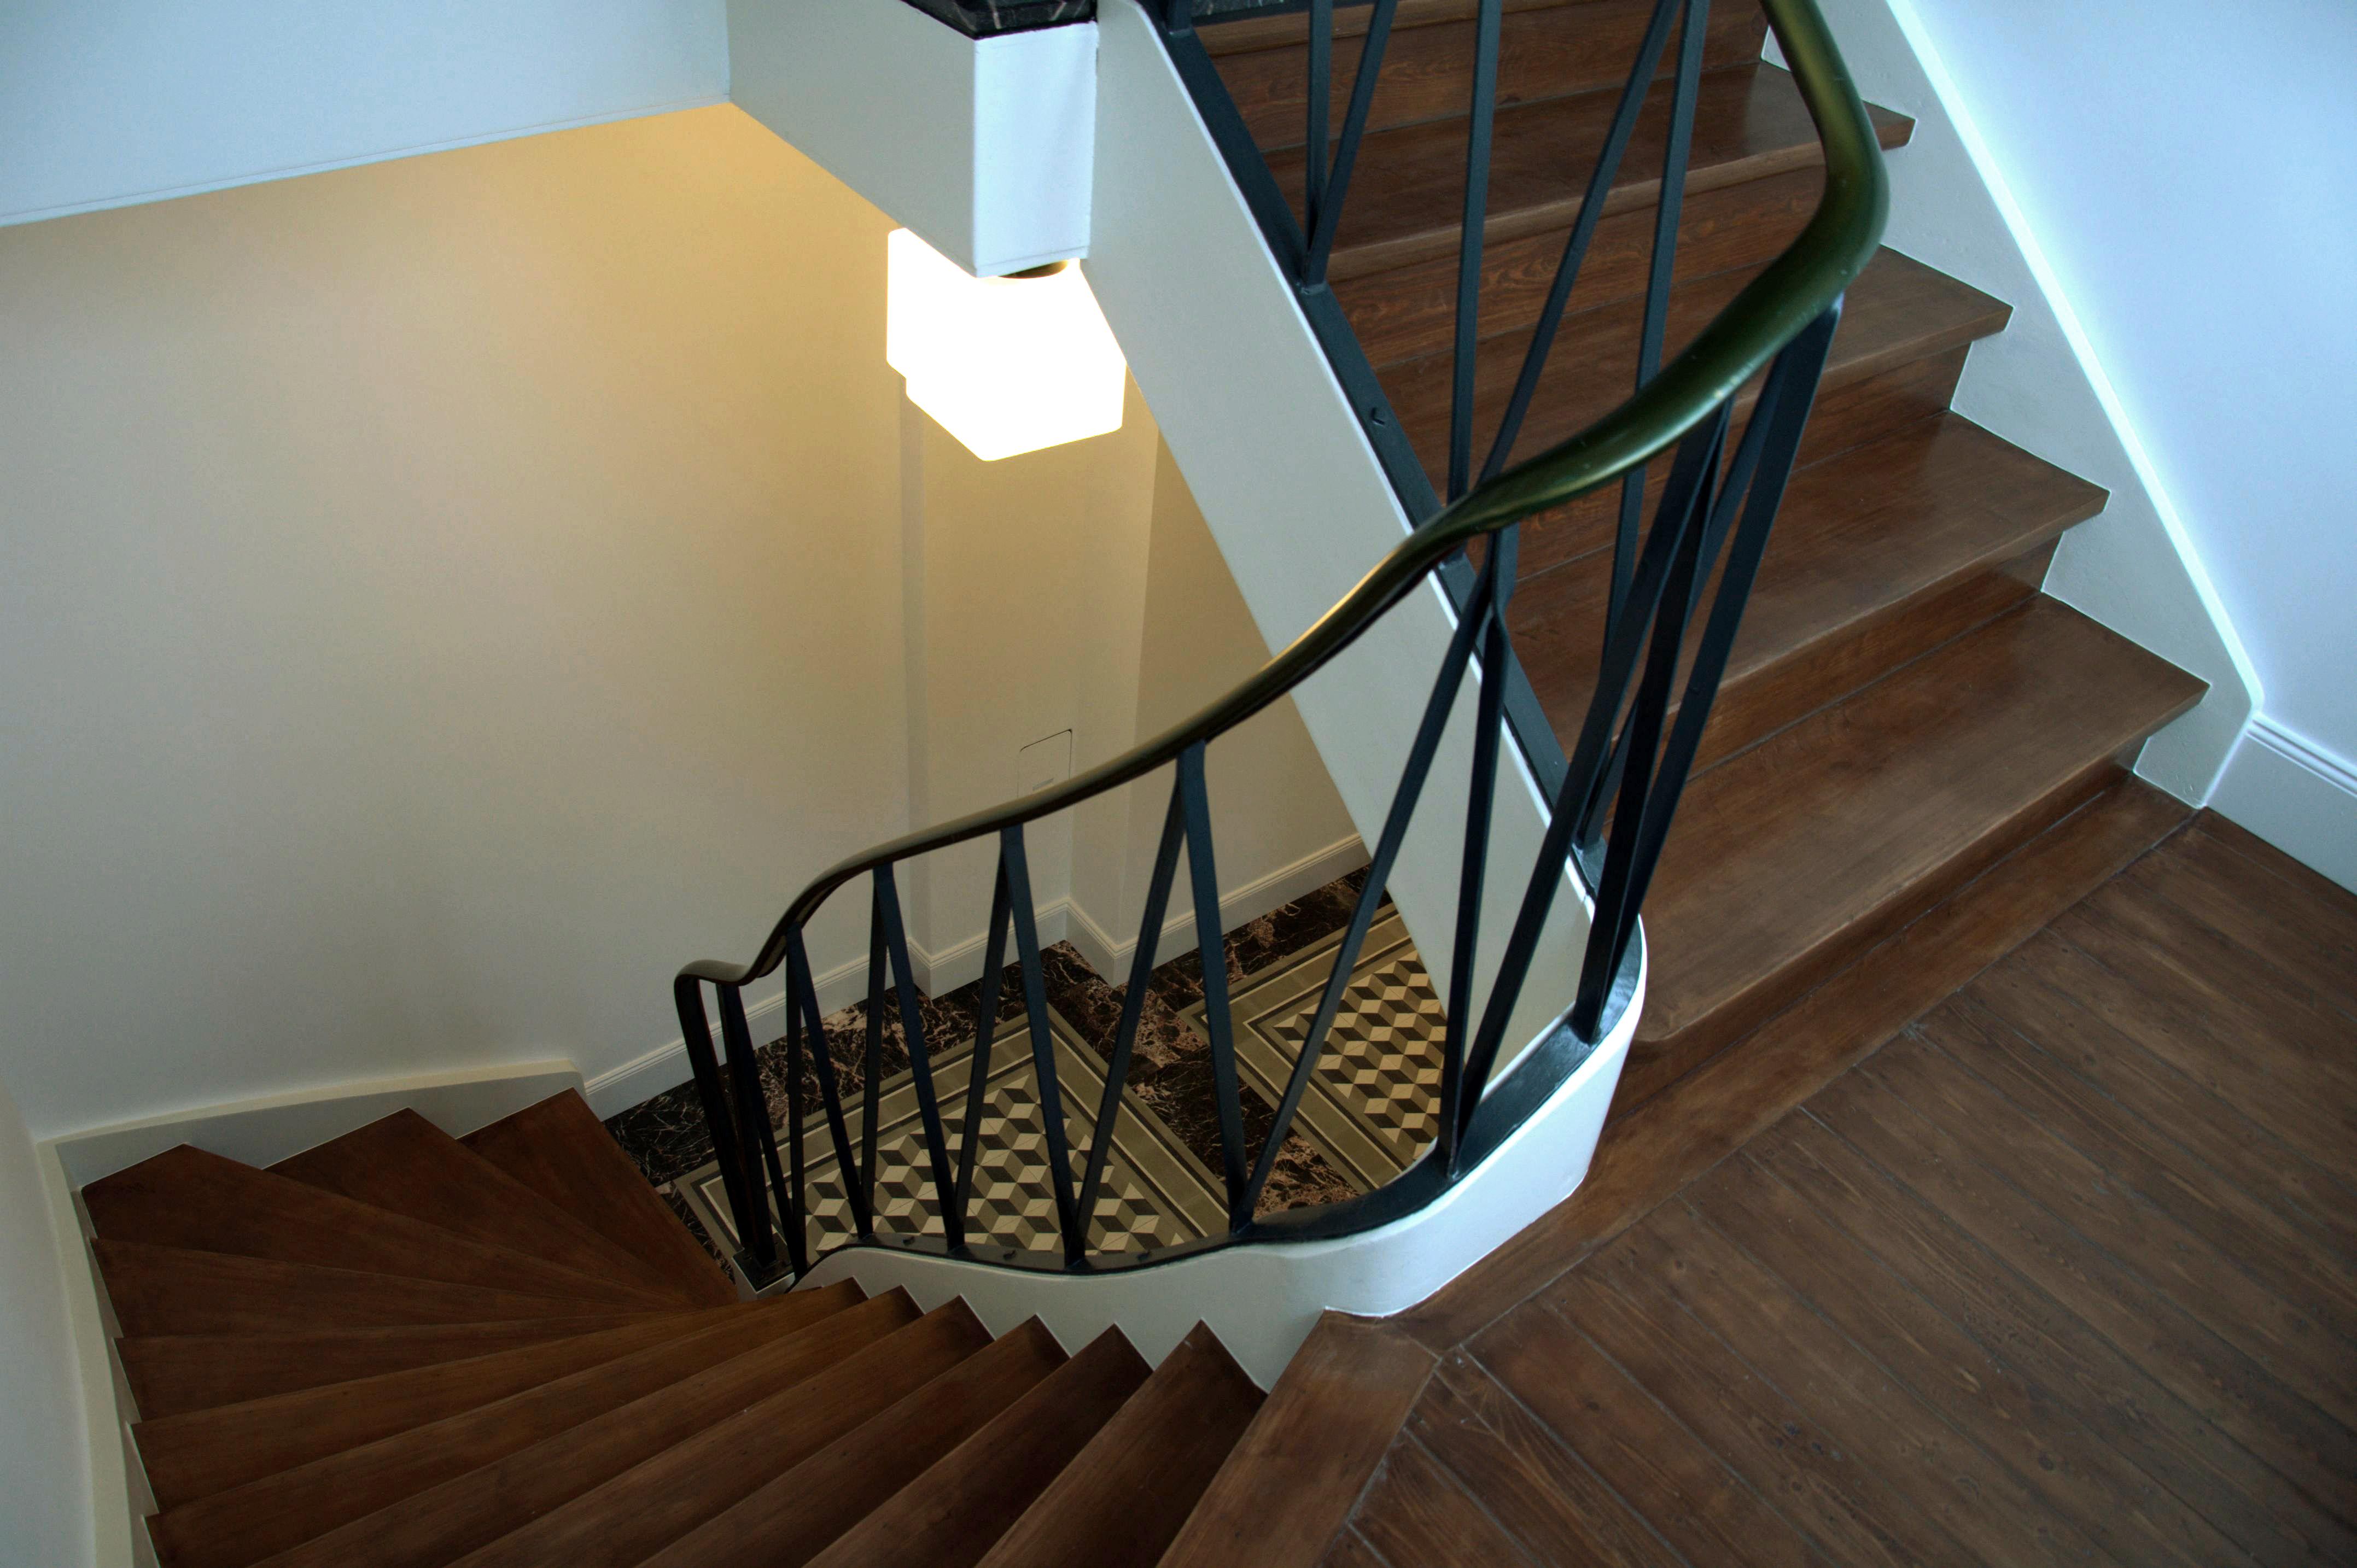 Eingang und Treppenhaus in Die Design Fabrik #treppenhaus #eingang #treppenbeleuchtung ©Tatjana Adelt